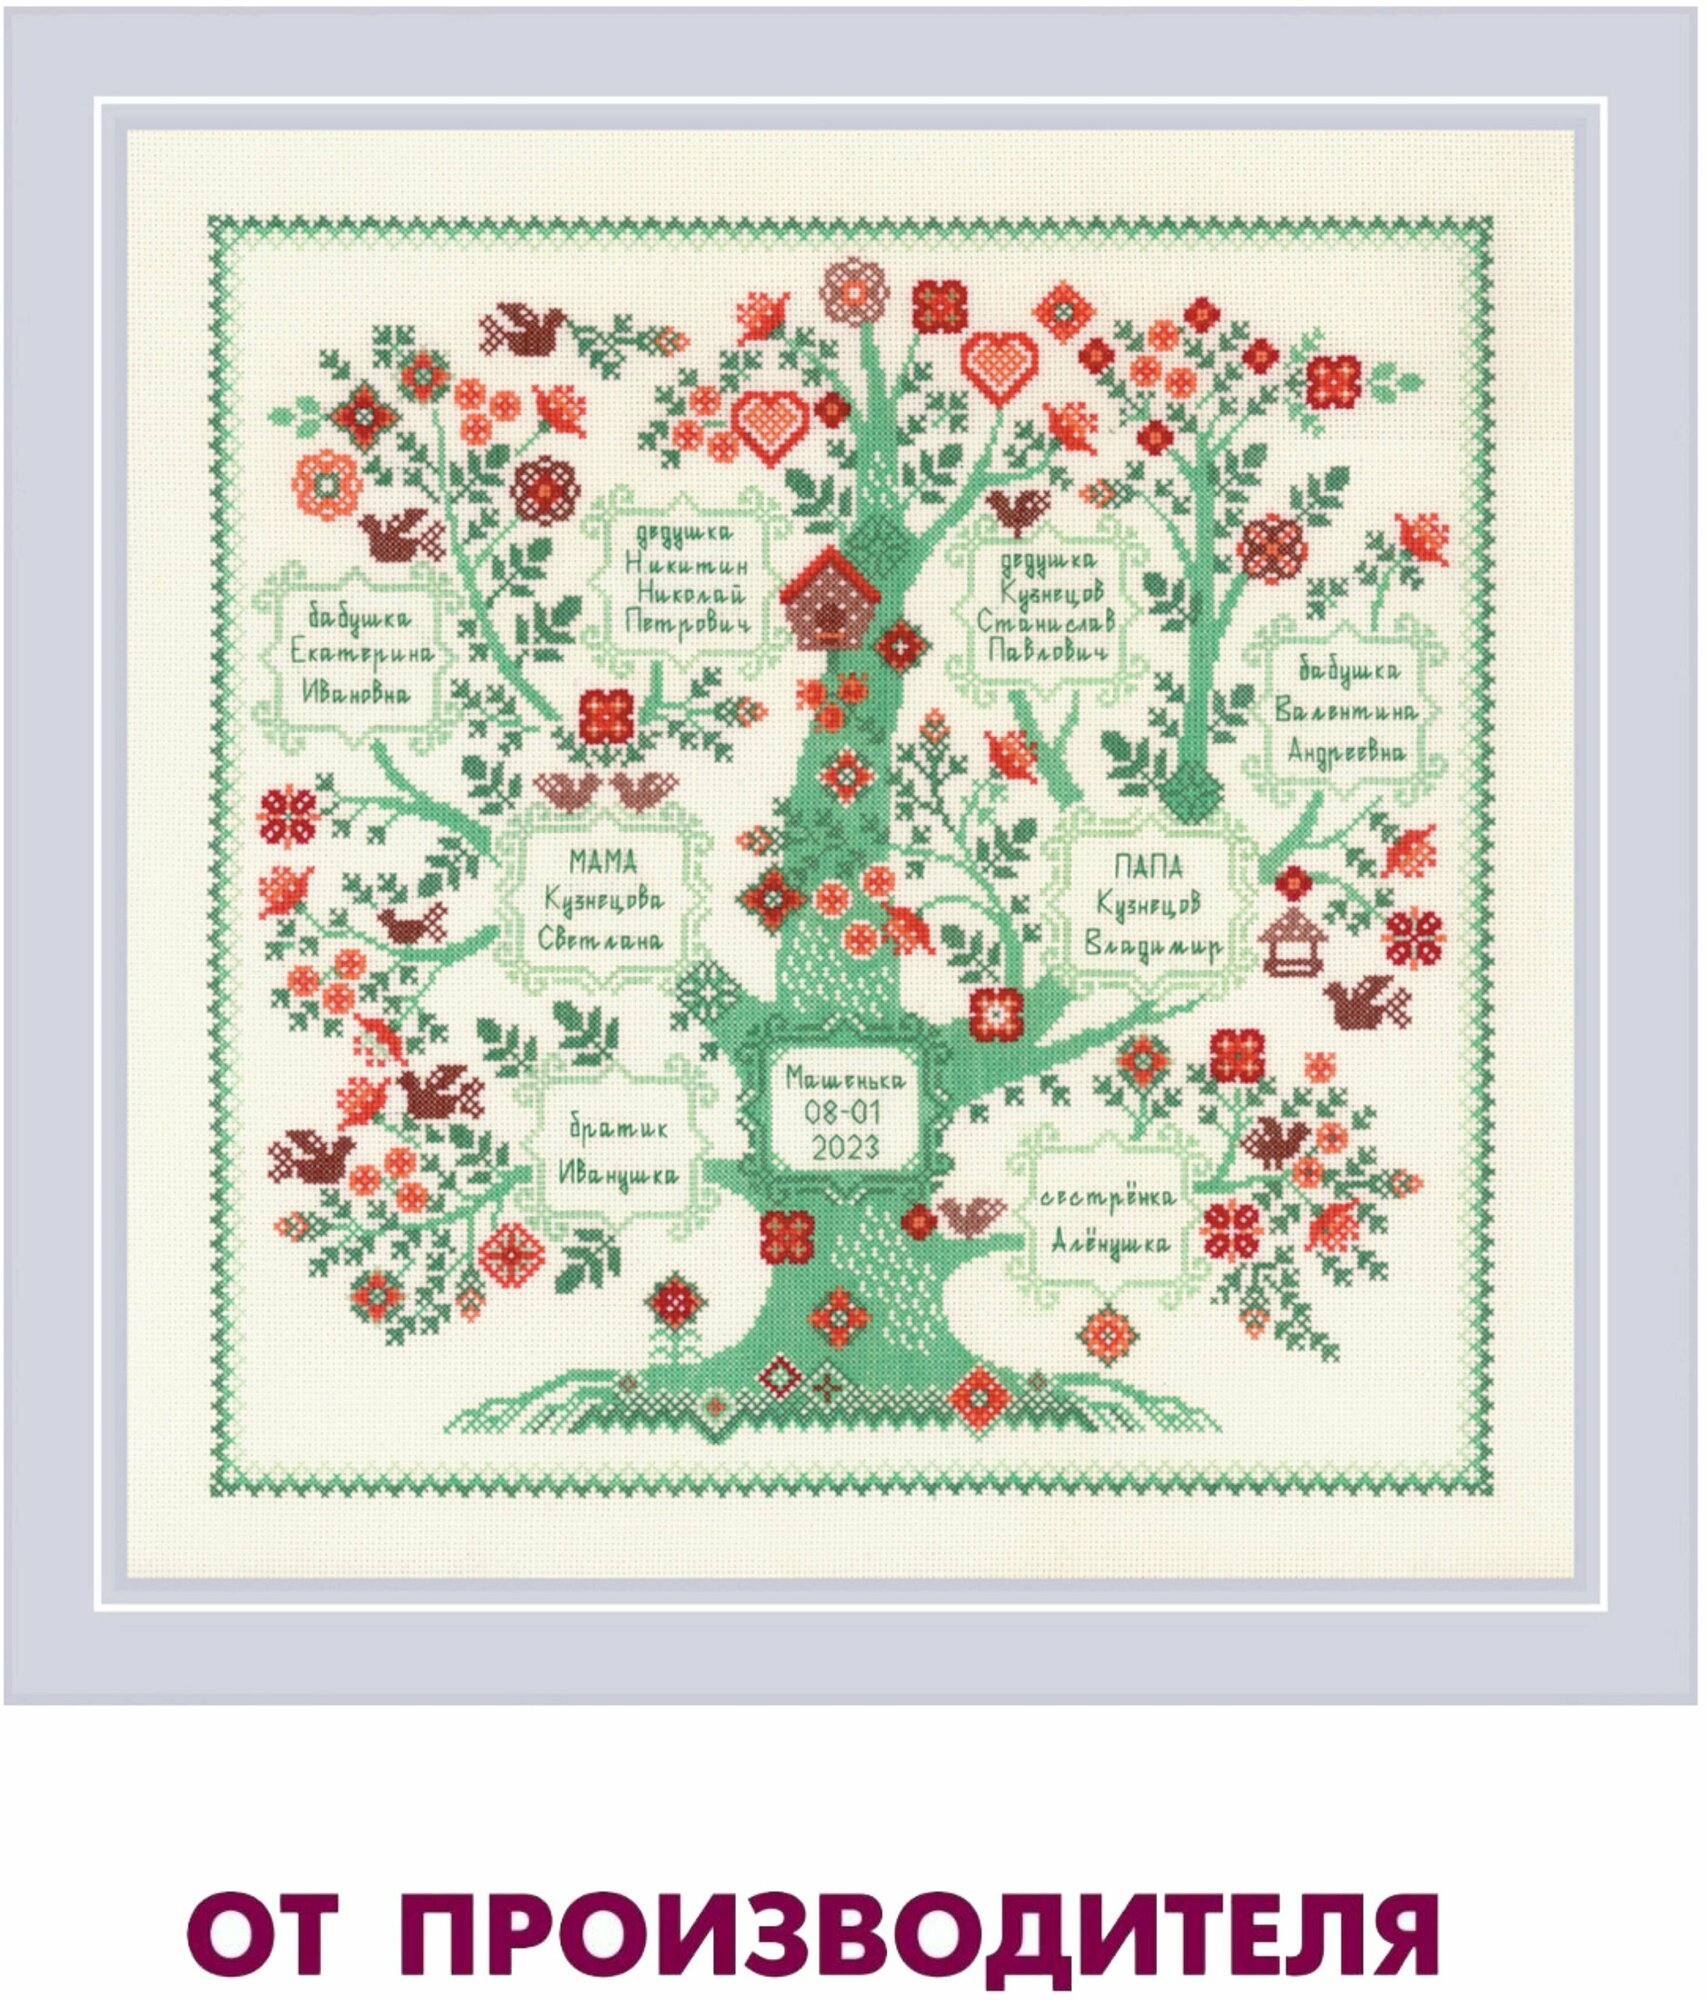 Набор для вышивания крестом Риолис, вышивка крестиком "Фамильное дерево", 35*35 см, 2095